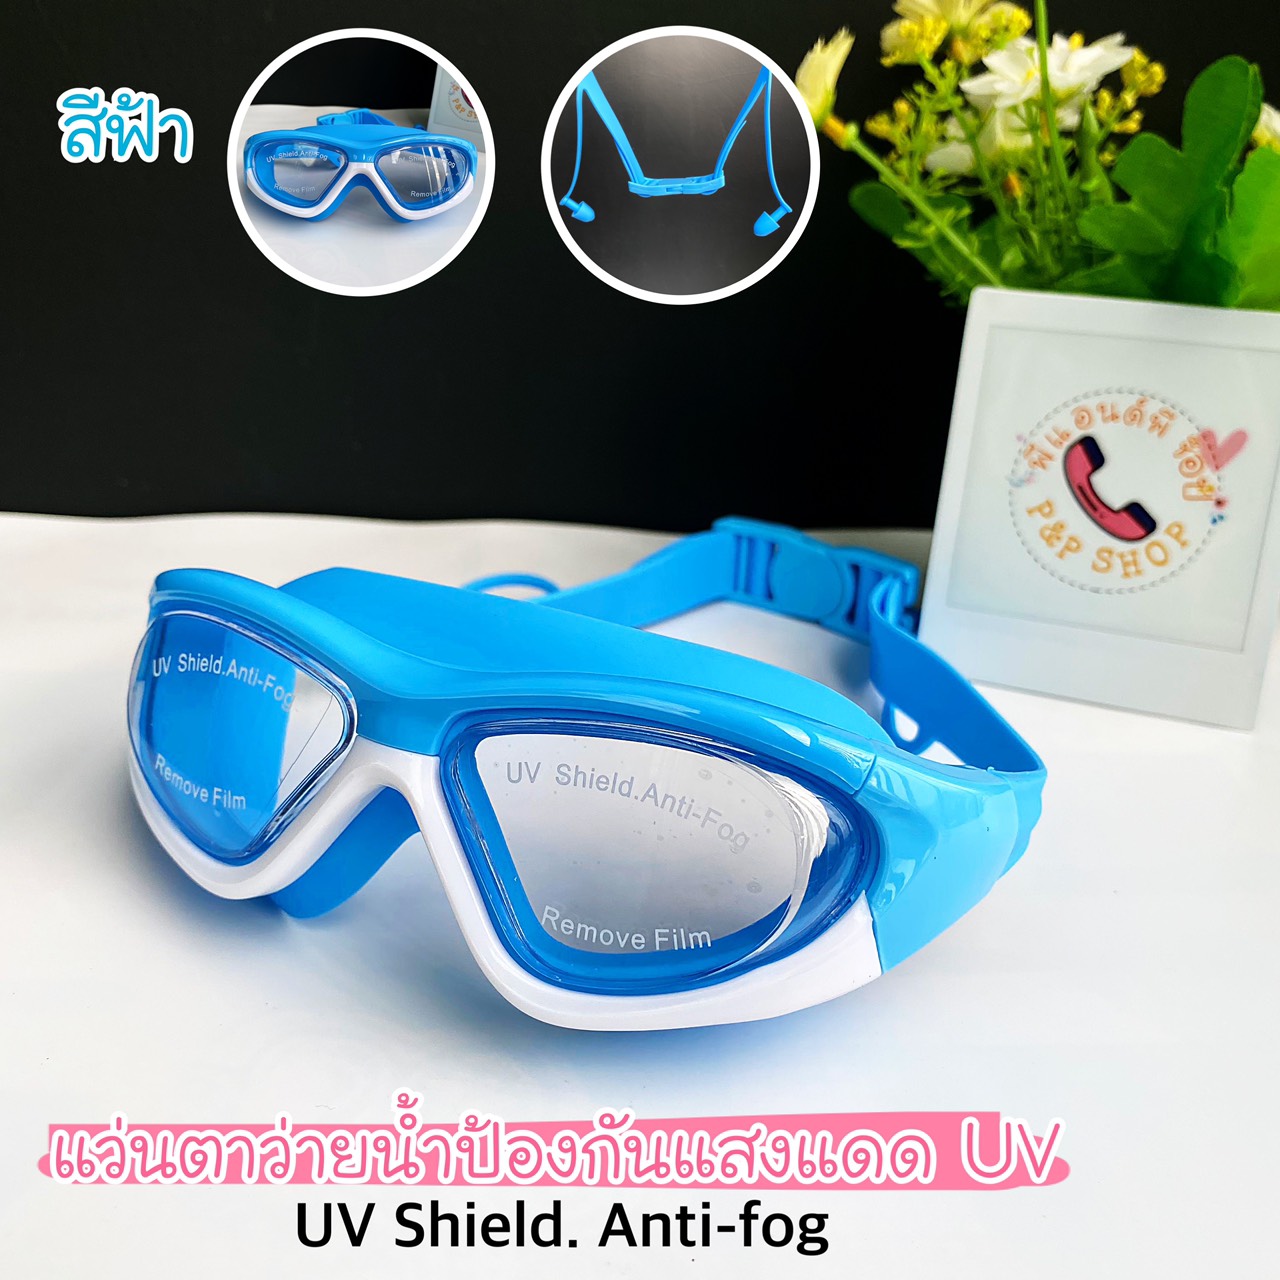 ข้อมูลประกอบของ แว่นตาว่ายน้ำเด็กสีสันสดใส ช่วยป้องกันแสงแดด UV  ไม่เป็นฝ้าที่หน้ากระจก สายรัดปรับระดับได้ พร้อมที่อุดหู